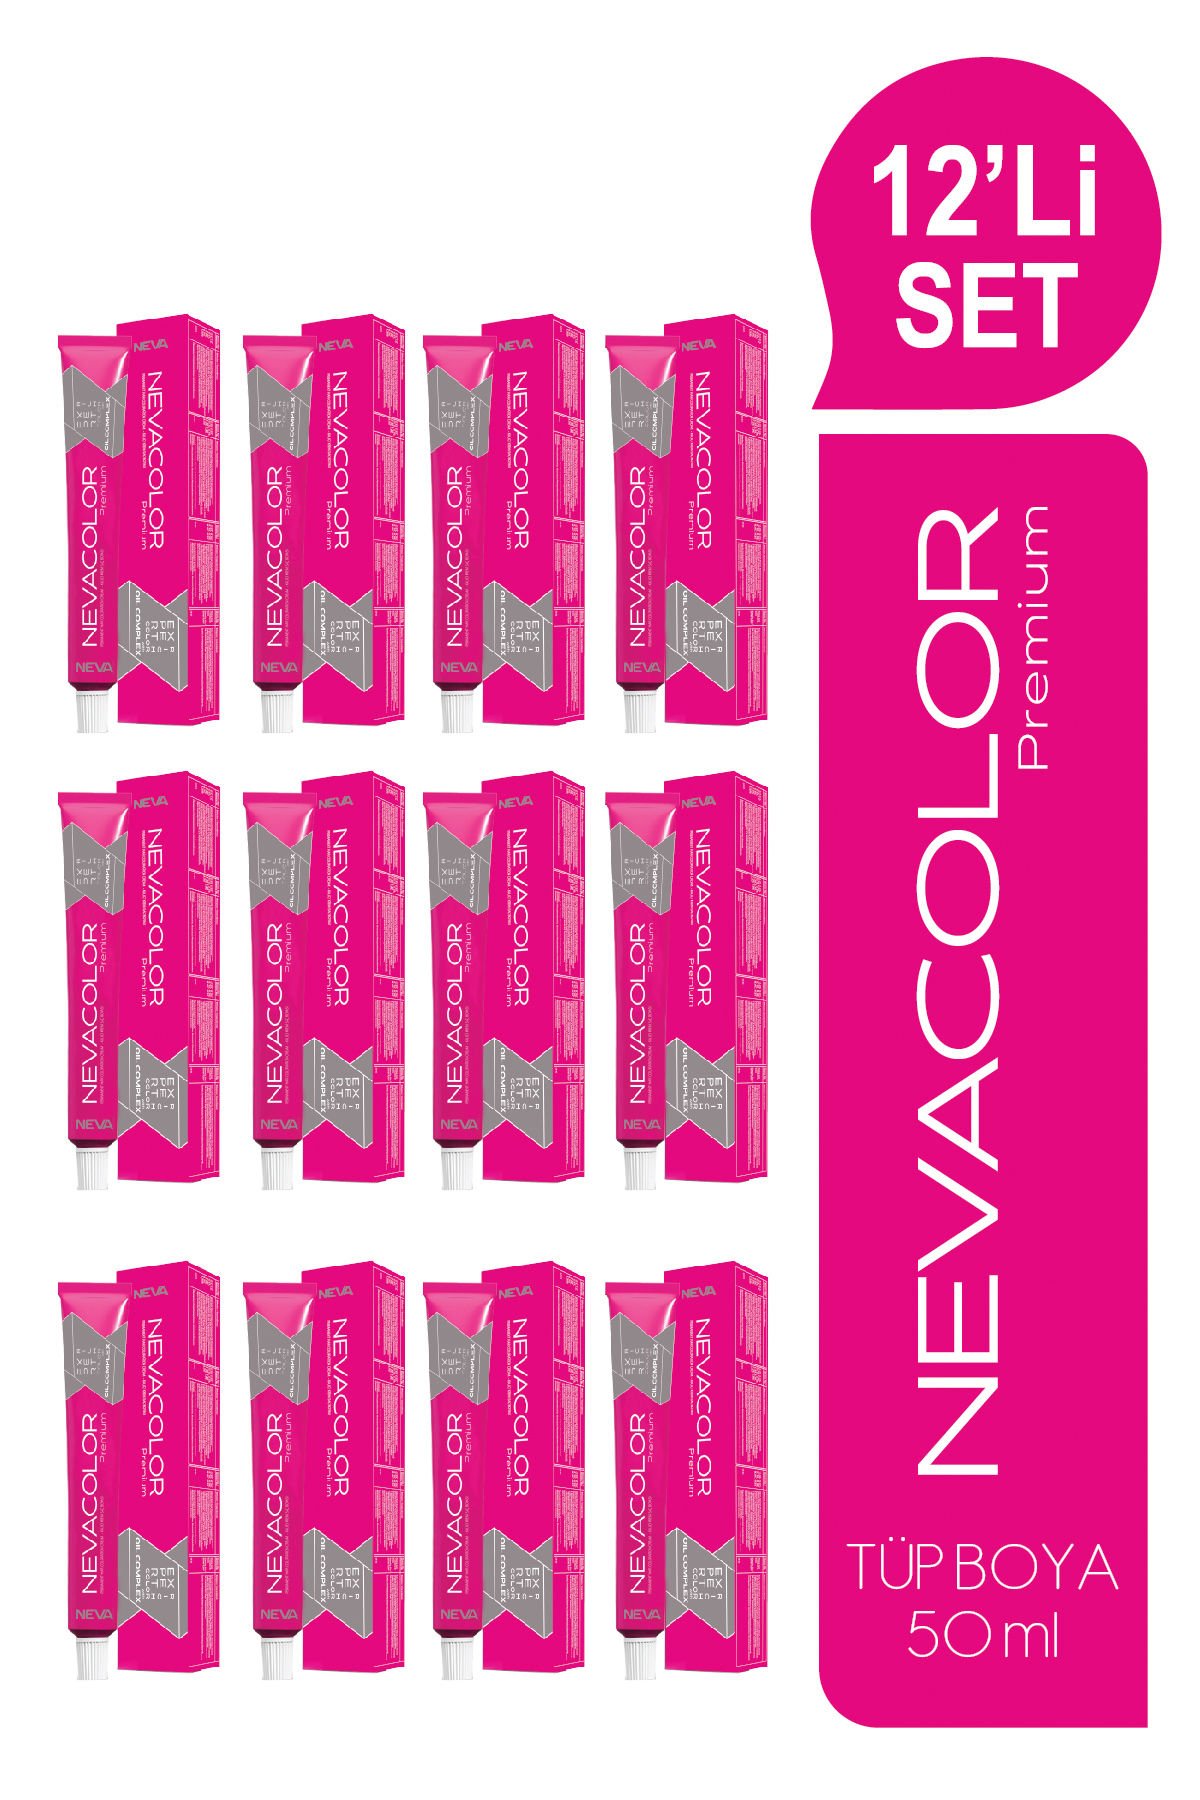 NEVACOLOR Premium 12'Lİ SET  3.4 KOYU KESTANE Kalıcı Krem Saç Boyası (50ml x 12 adet)